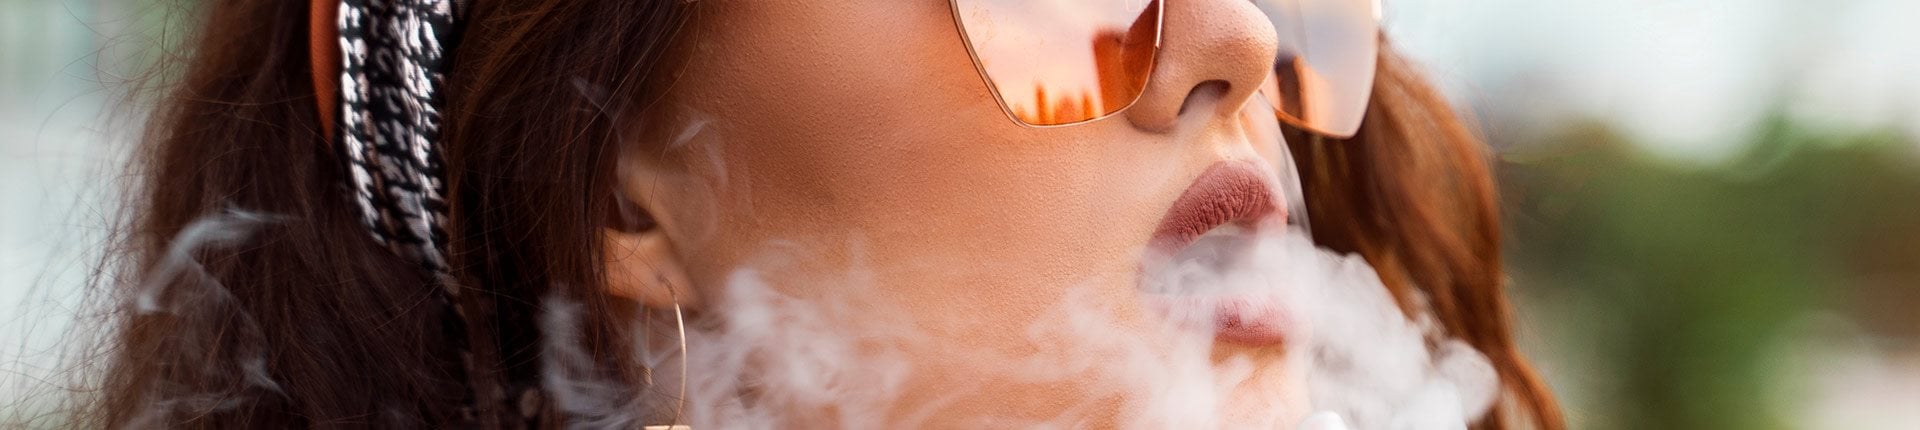 E-papierosy powodują zmiany w mikrobiomie jamy ustnej